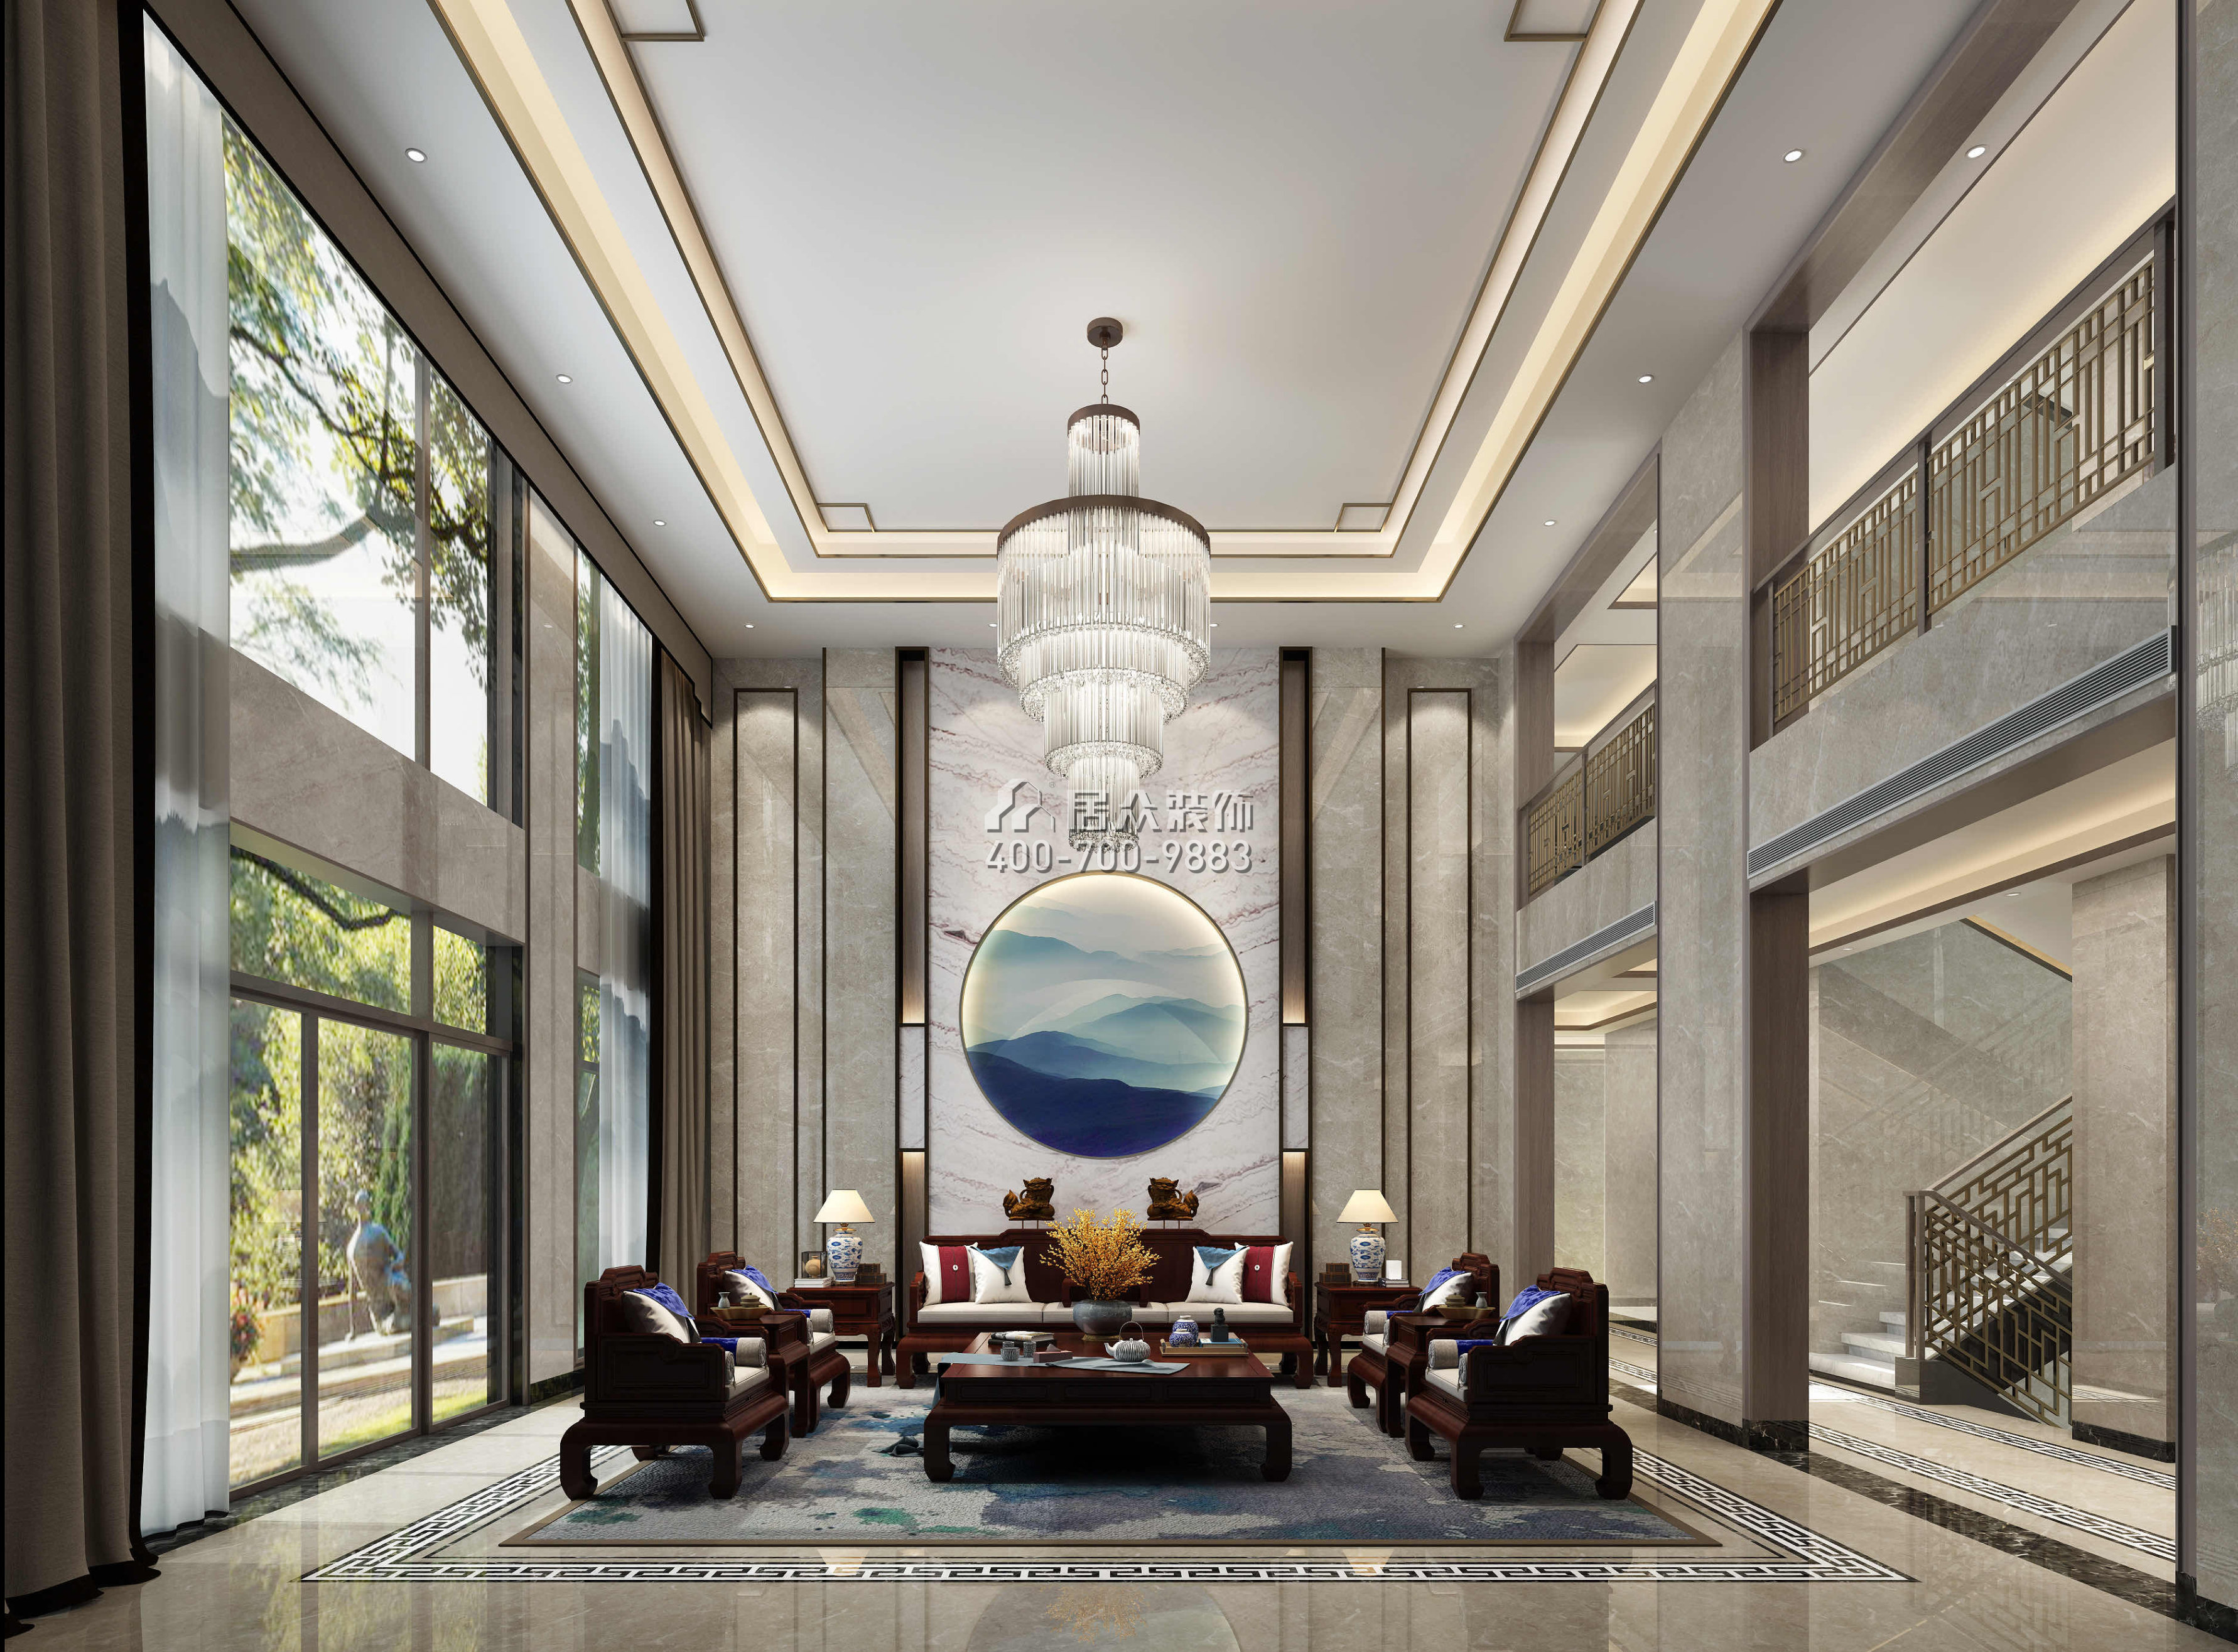 中信森林湖1100平方米中式风格别墅户型客厅装修效果图